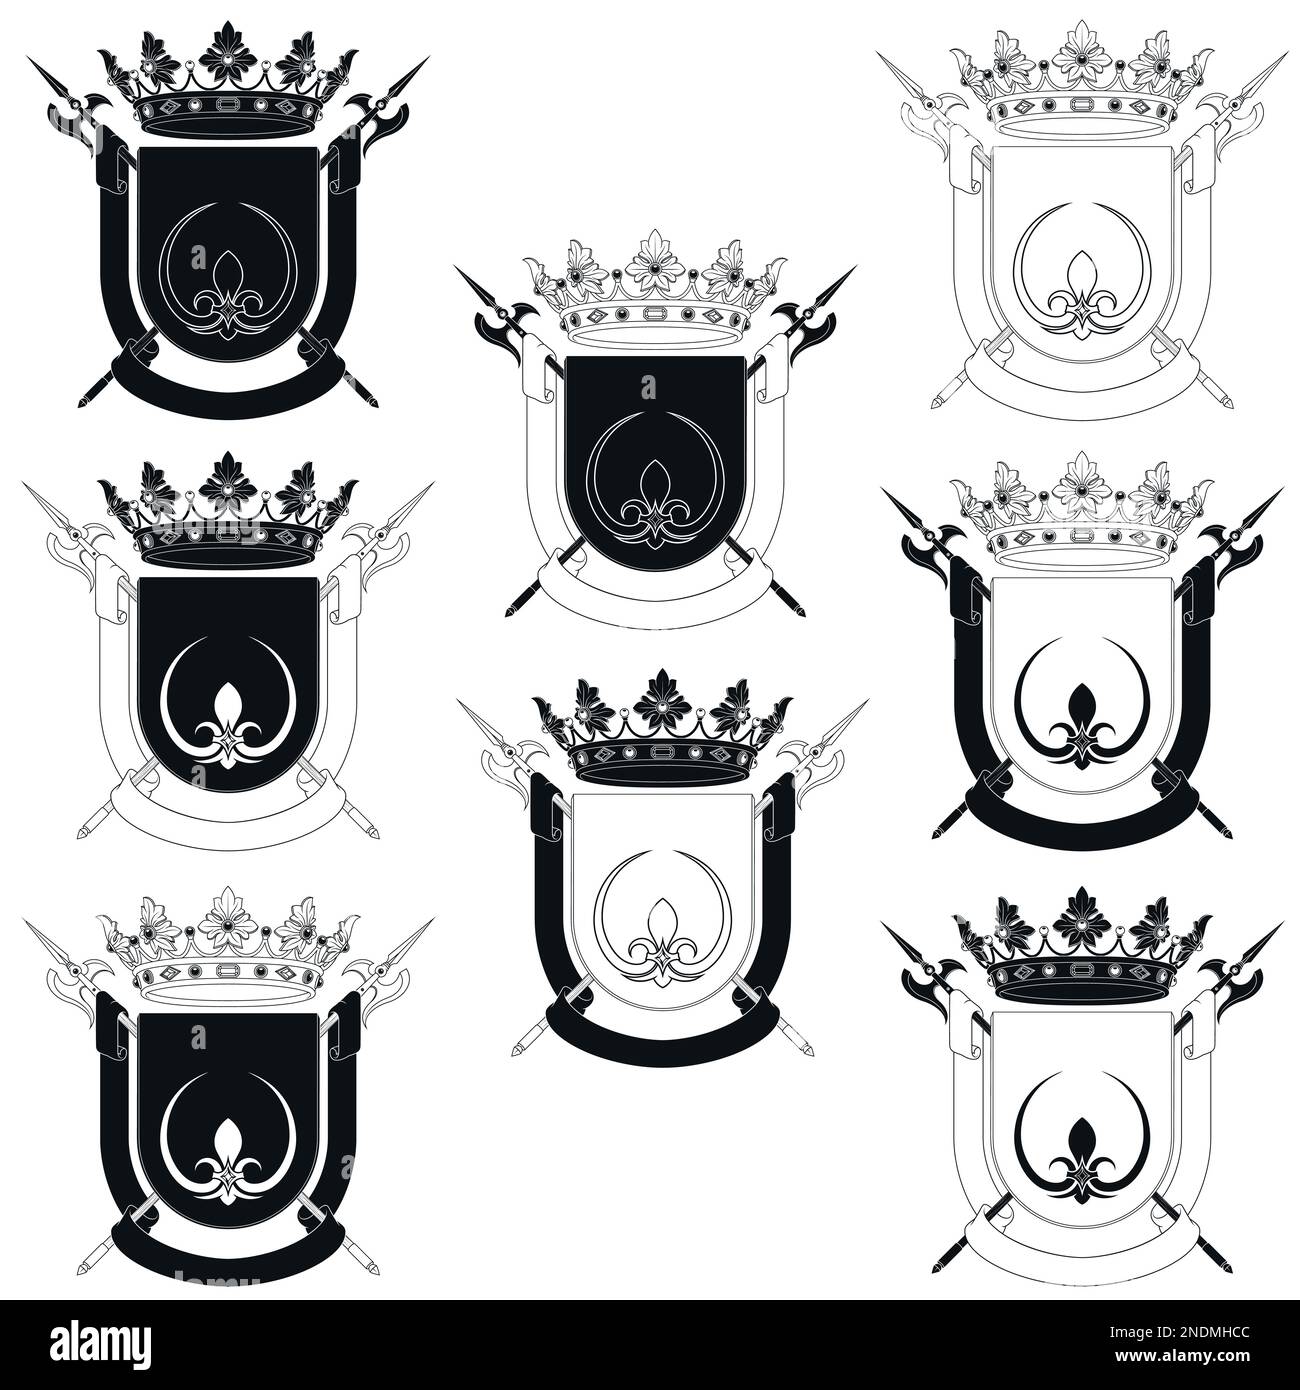 Wappen des Mittelalters mit Wappen, Wappen mit Fleur de Lis, Halberd, Krone und Band Stock Vektor